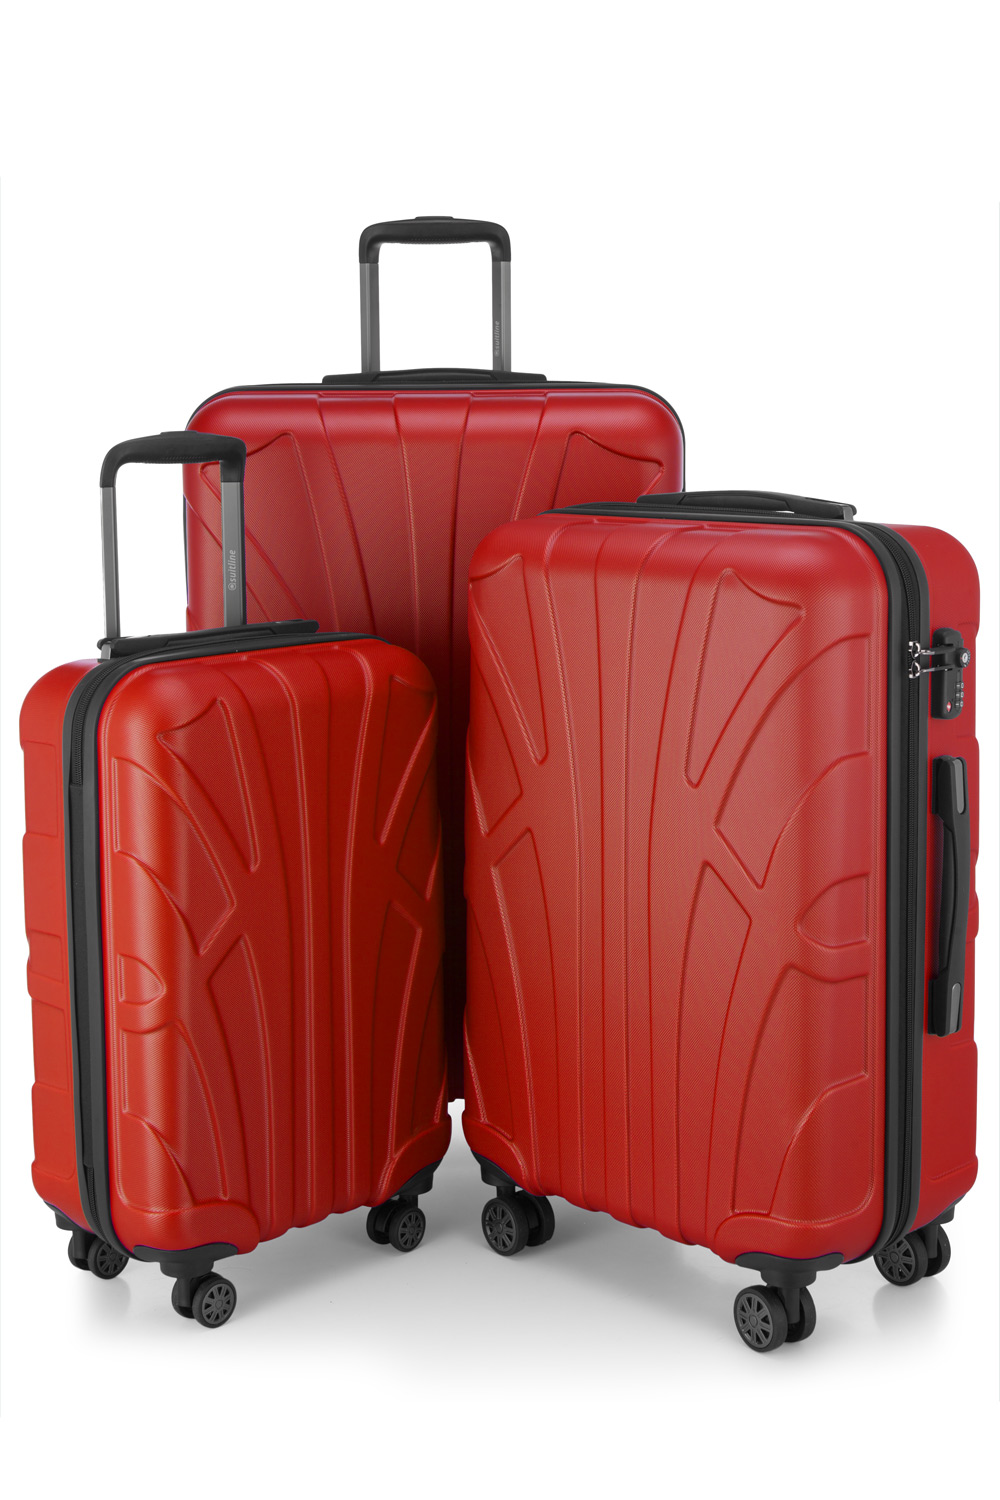 Kofferset 3 teilig, Hartschale ABS, Koffergrößen S/M/L, TSA-Zahlenschloss -  Rot